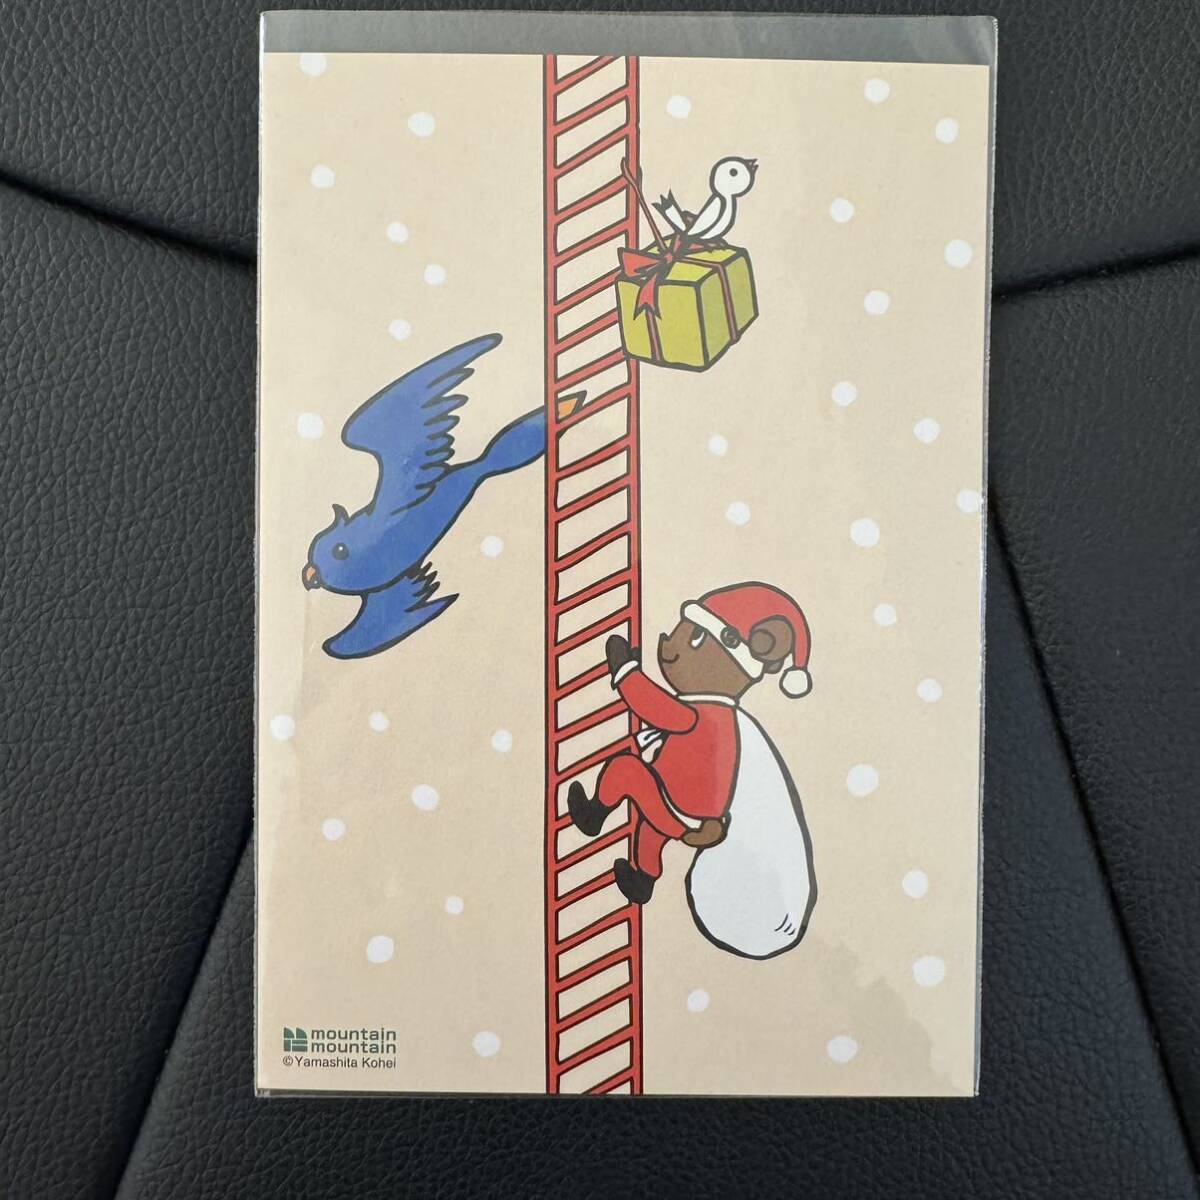 ★montaña montaña Kohei Yamashita Oso Santa Claus Postal★Postal de Navidad Yamashita Kohei Blue Bird Osaka Expo, antiguo, recopilación, bienes varios, otros